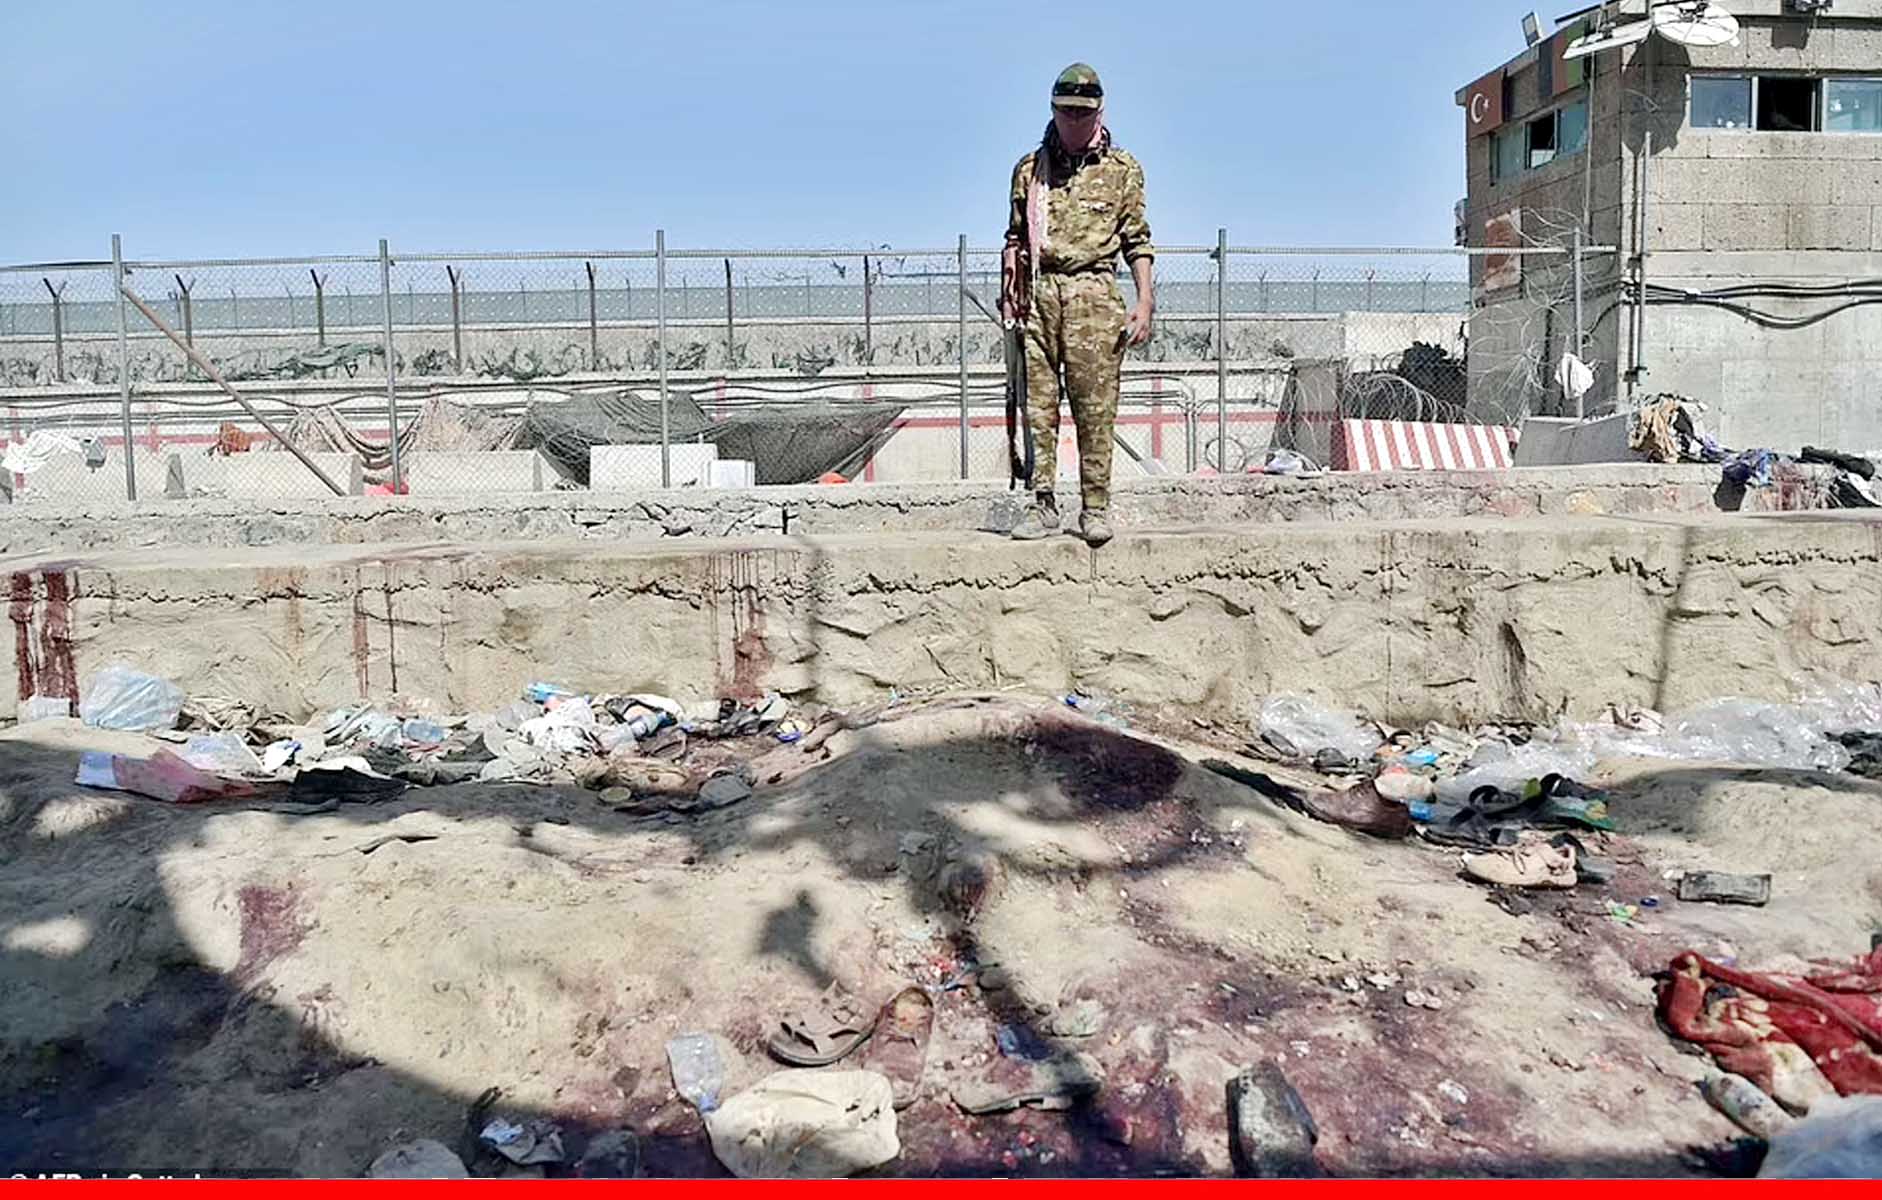 काबुल एयरपोर्ट को ही उड़ाने की थी ‘साजिश’! खुद पर 11 किलो विस्फोटक बांधकर भीड़ में घुसा हमलावर